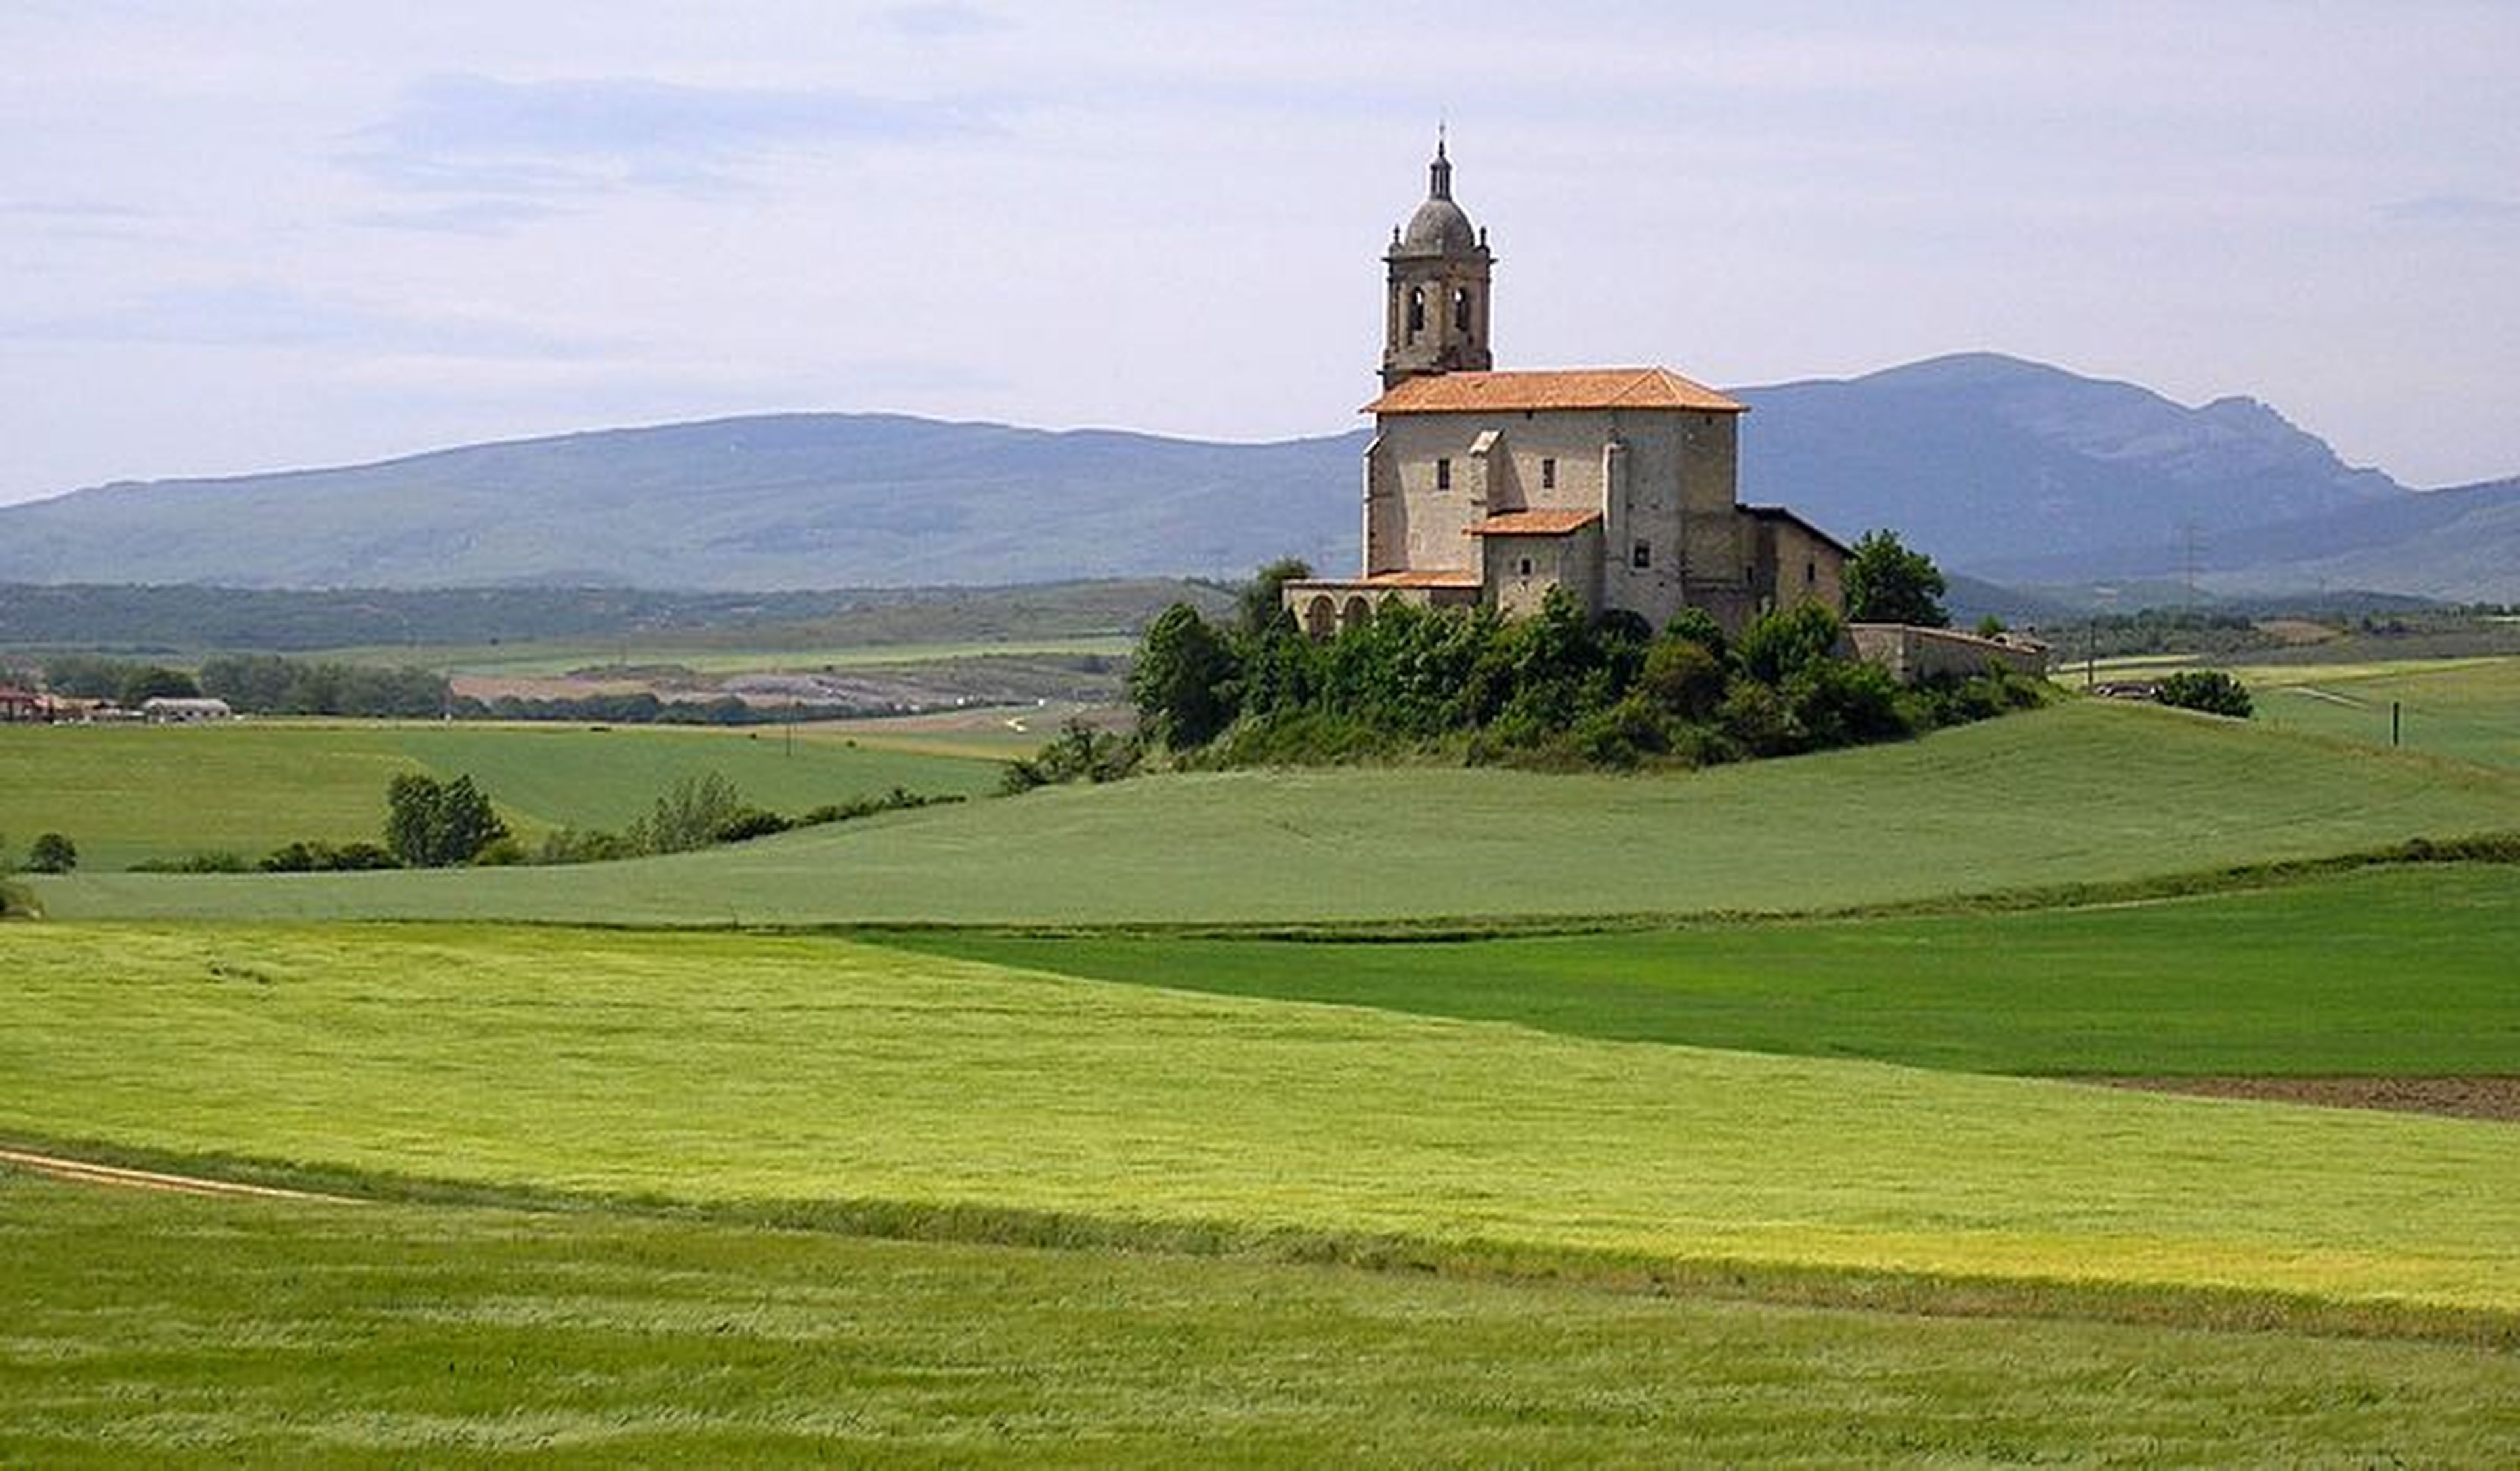 Paisaje de la Llanada Alavesa: iglesia de Arroiabe, y al fondo, el monte Gorbea.